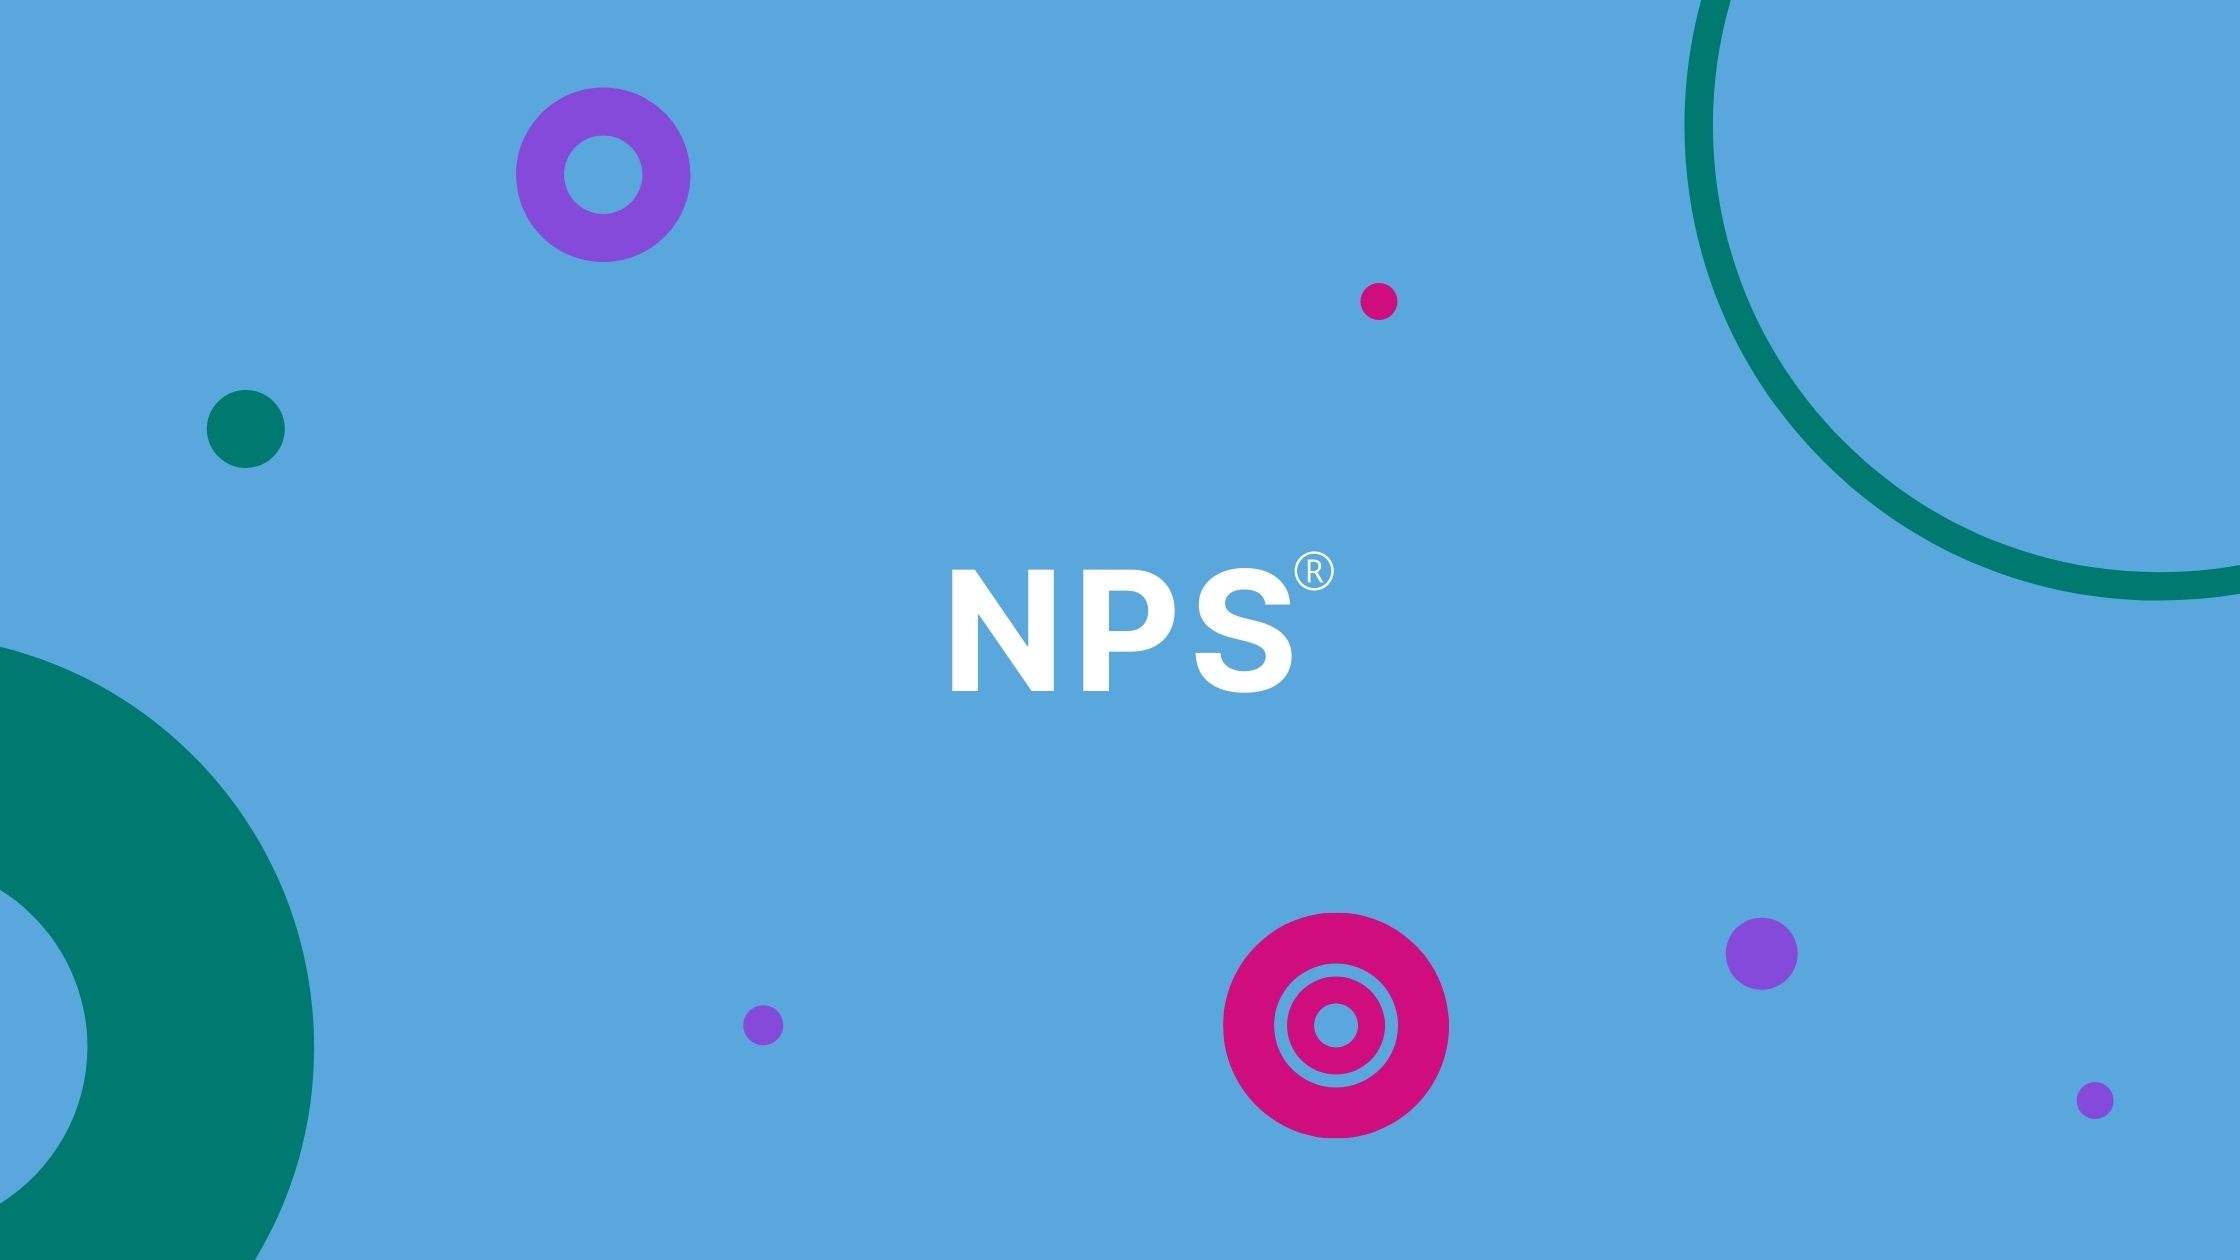 nps-net-promoter-score